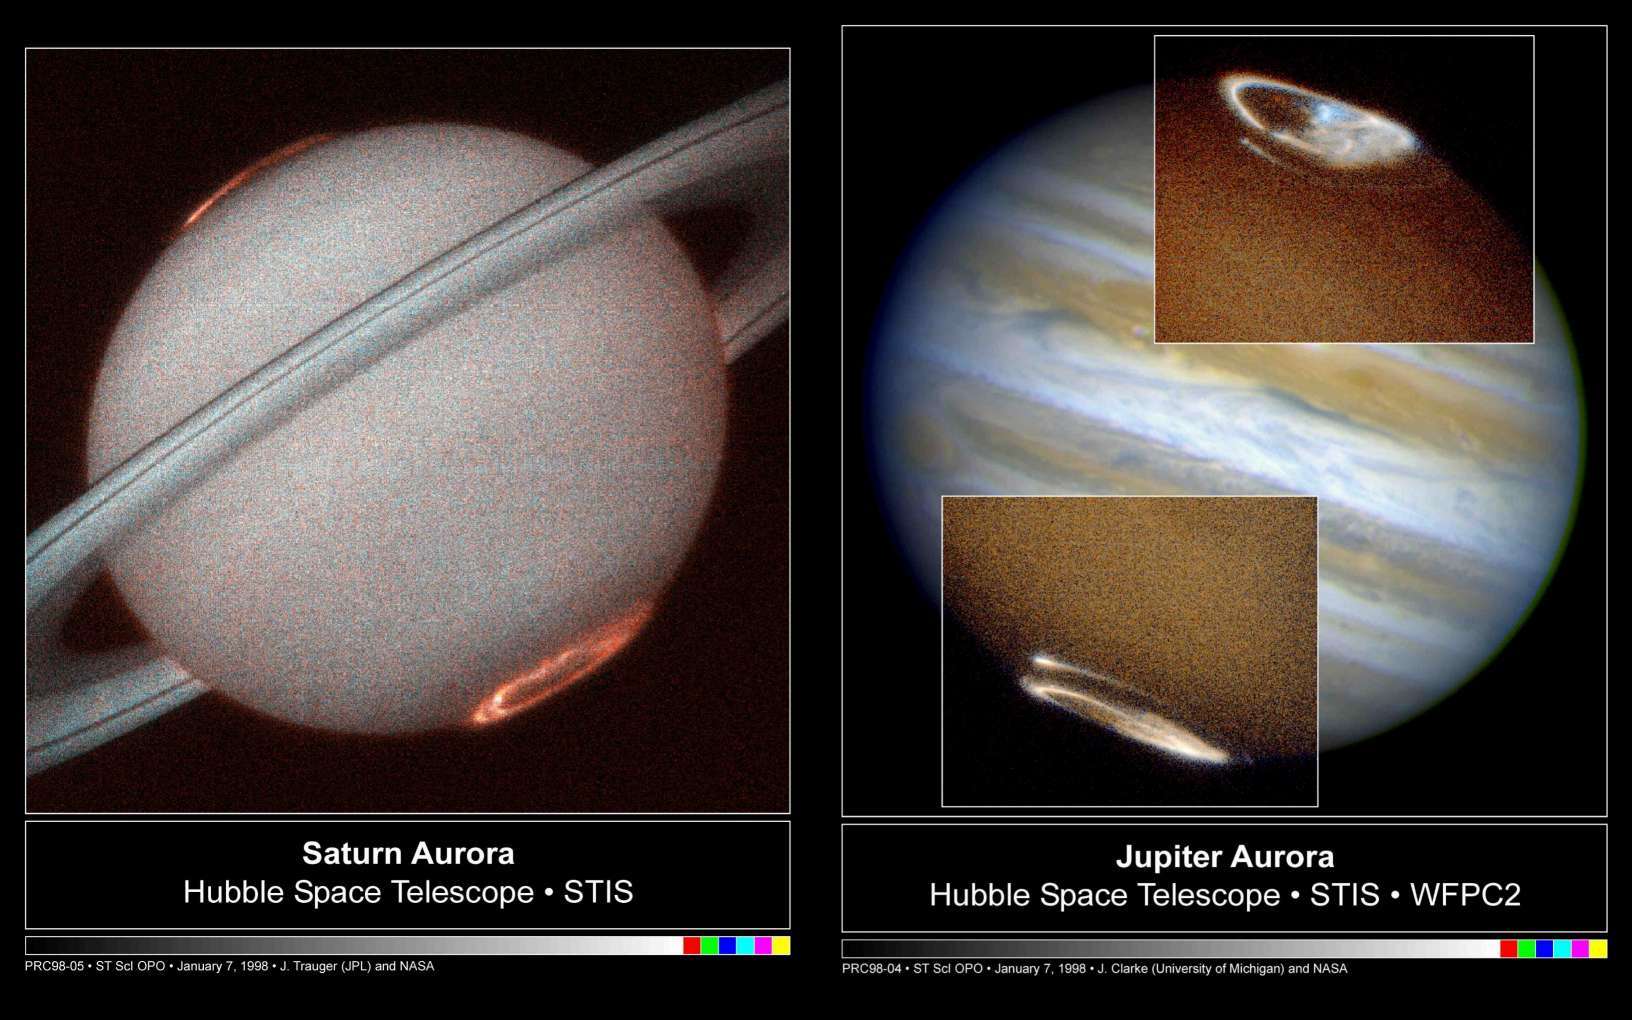 Aquí puedes ver las fotografías del planeta Saturno y Júpiter tomadas por la NASA con los dos agujeros polares